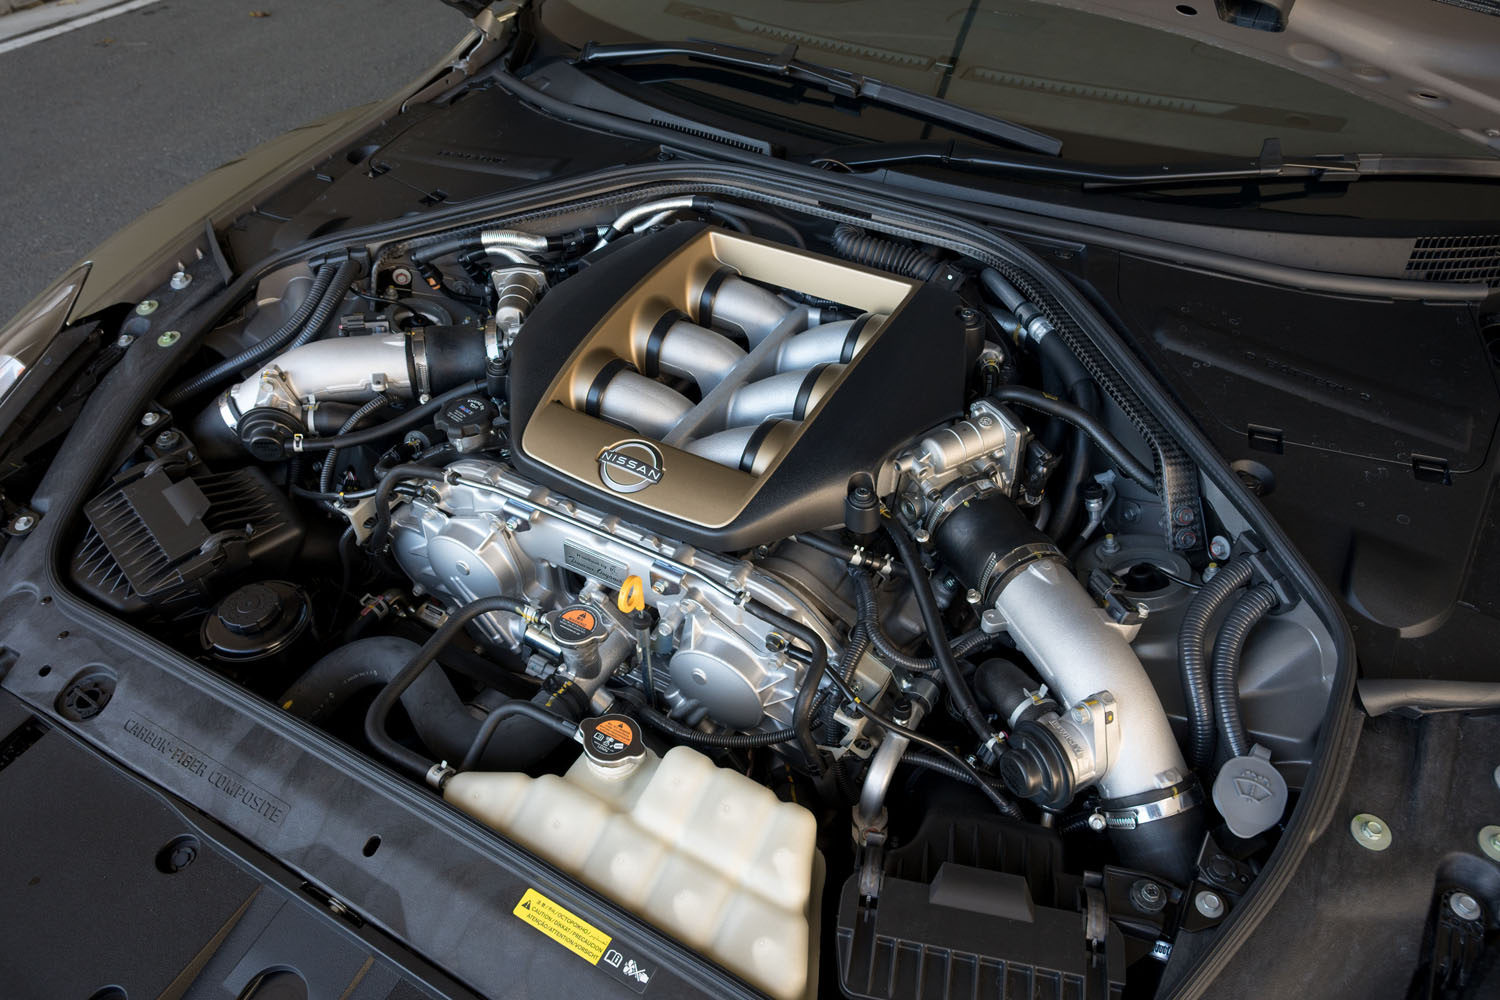 ゴールドの装飾が施されたエンジンカバーも「T-spec」の特徴。エンジンそのものは標準車と同じで、570PSの最高出力と637N・mの最大トルクを発生する。